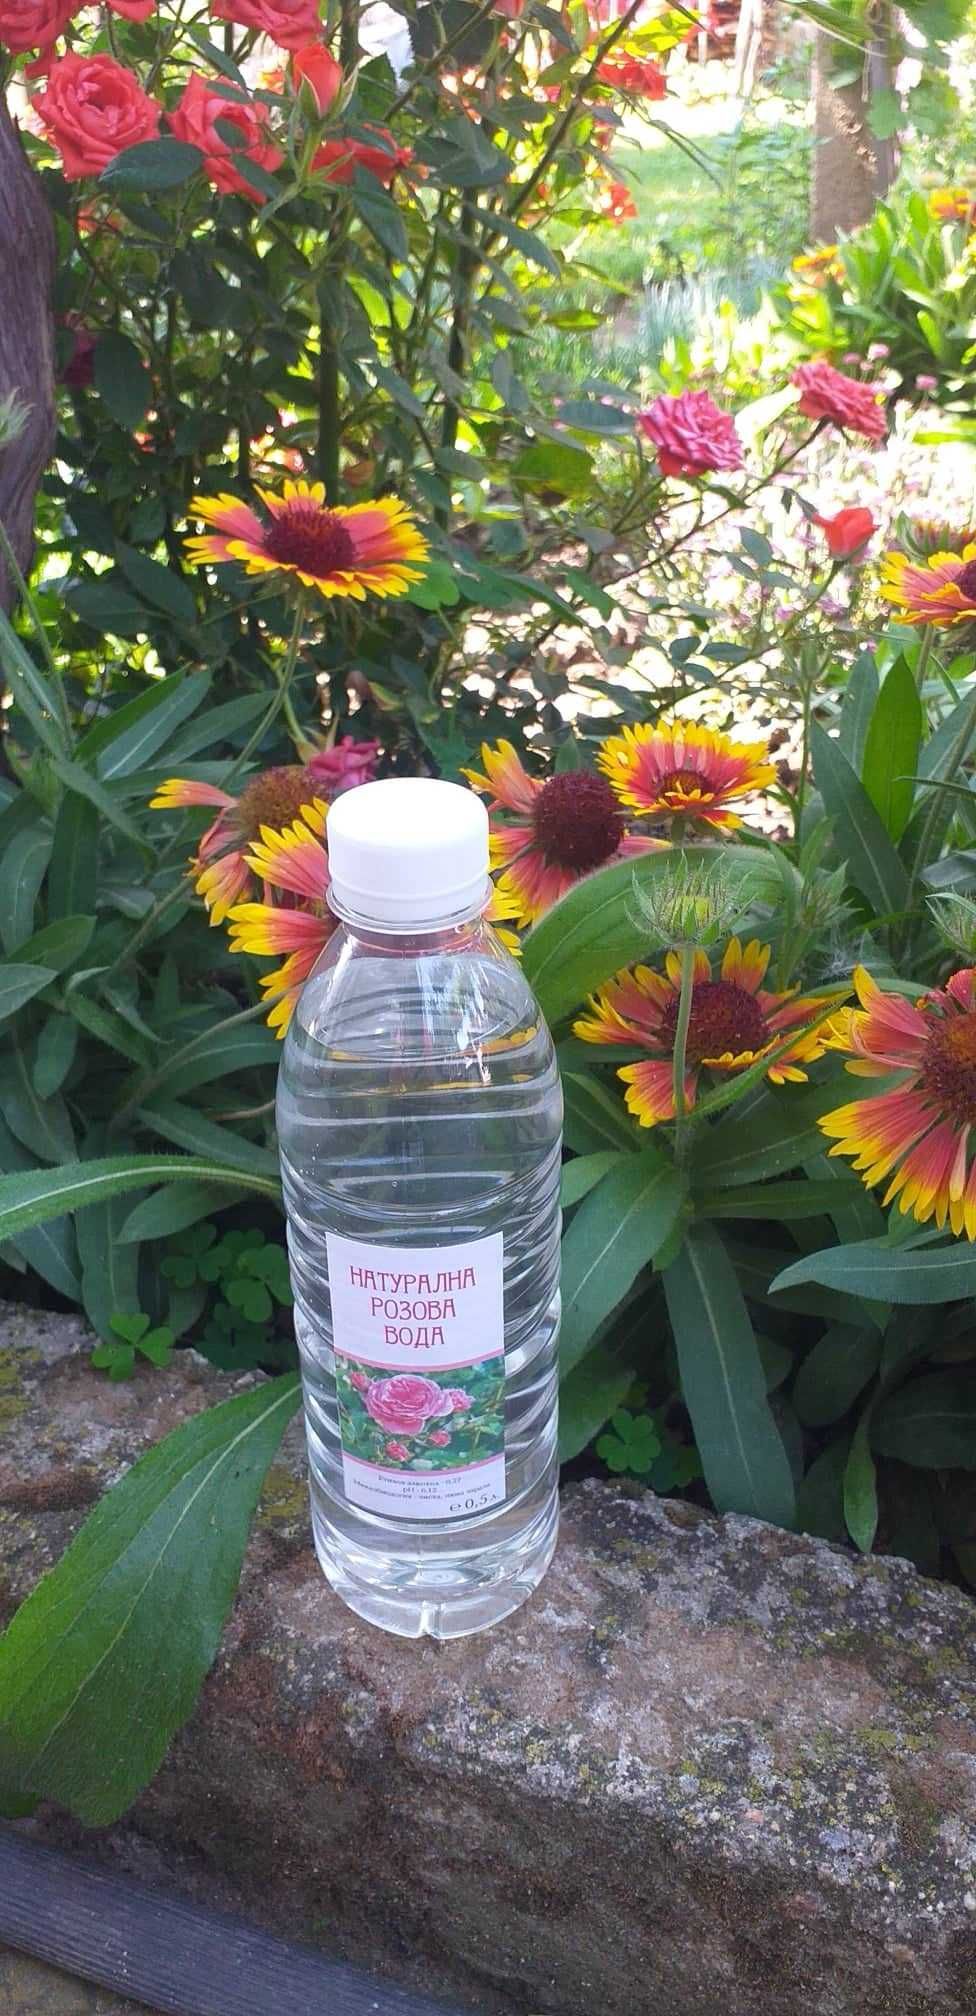 Натурална розова вода